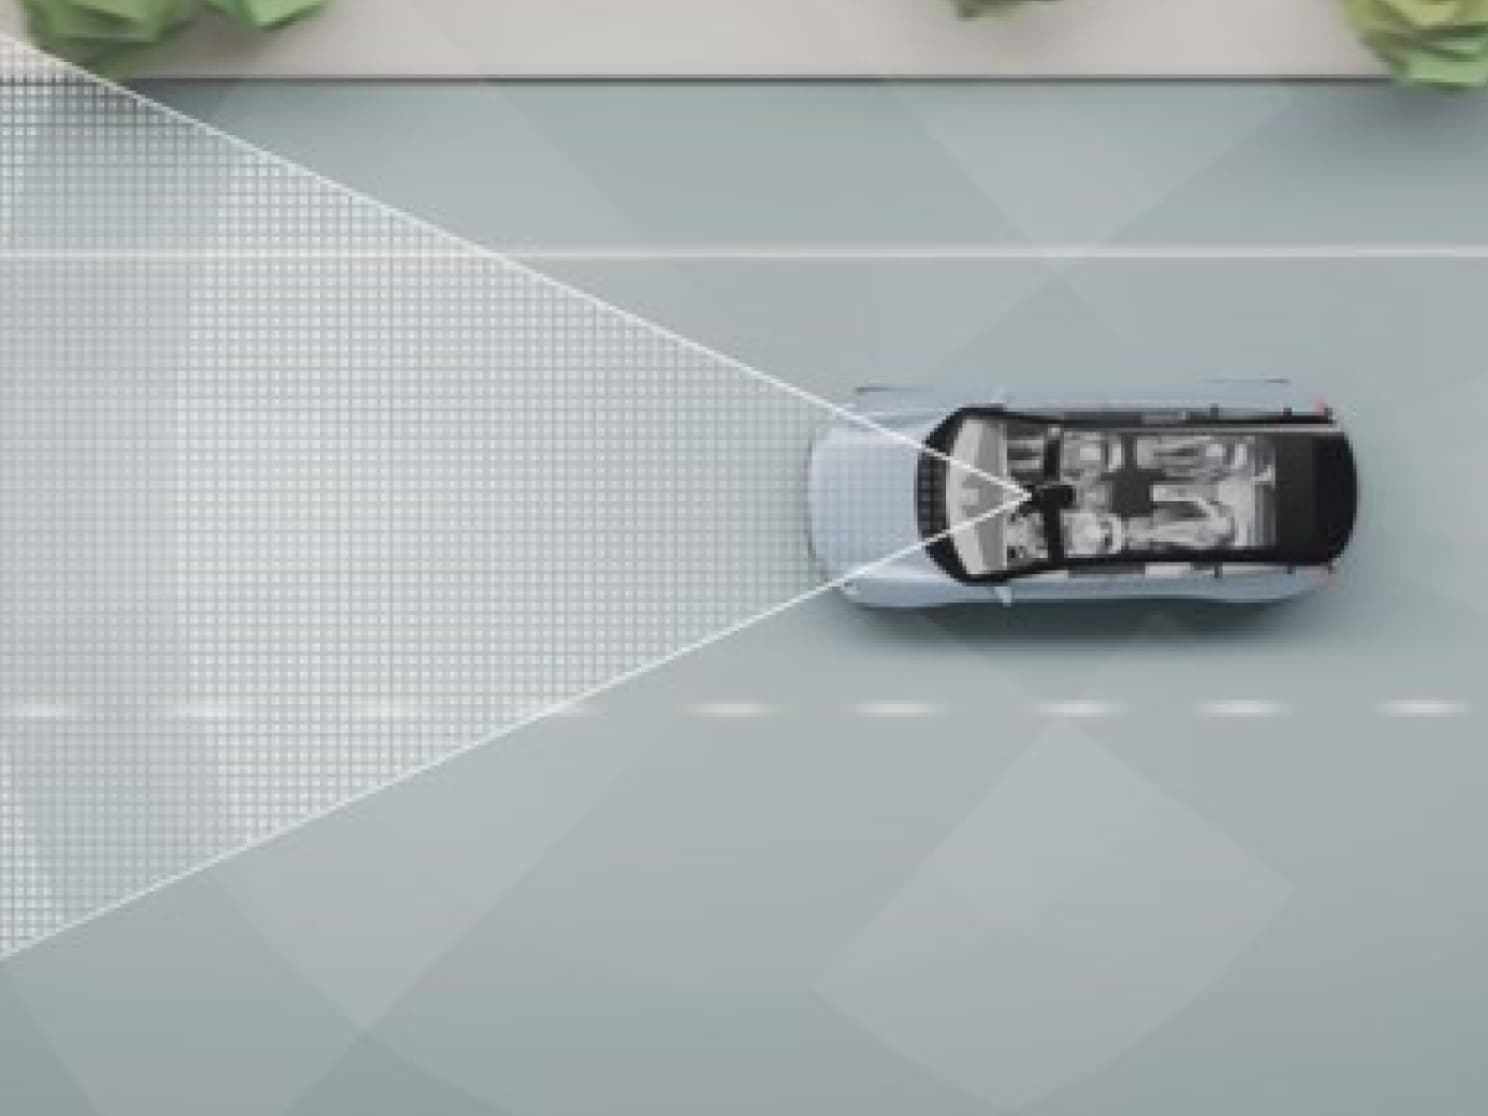 Représentation numérique d’une voiture sur une route avec des lignes et autres objets.